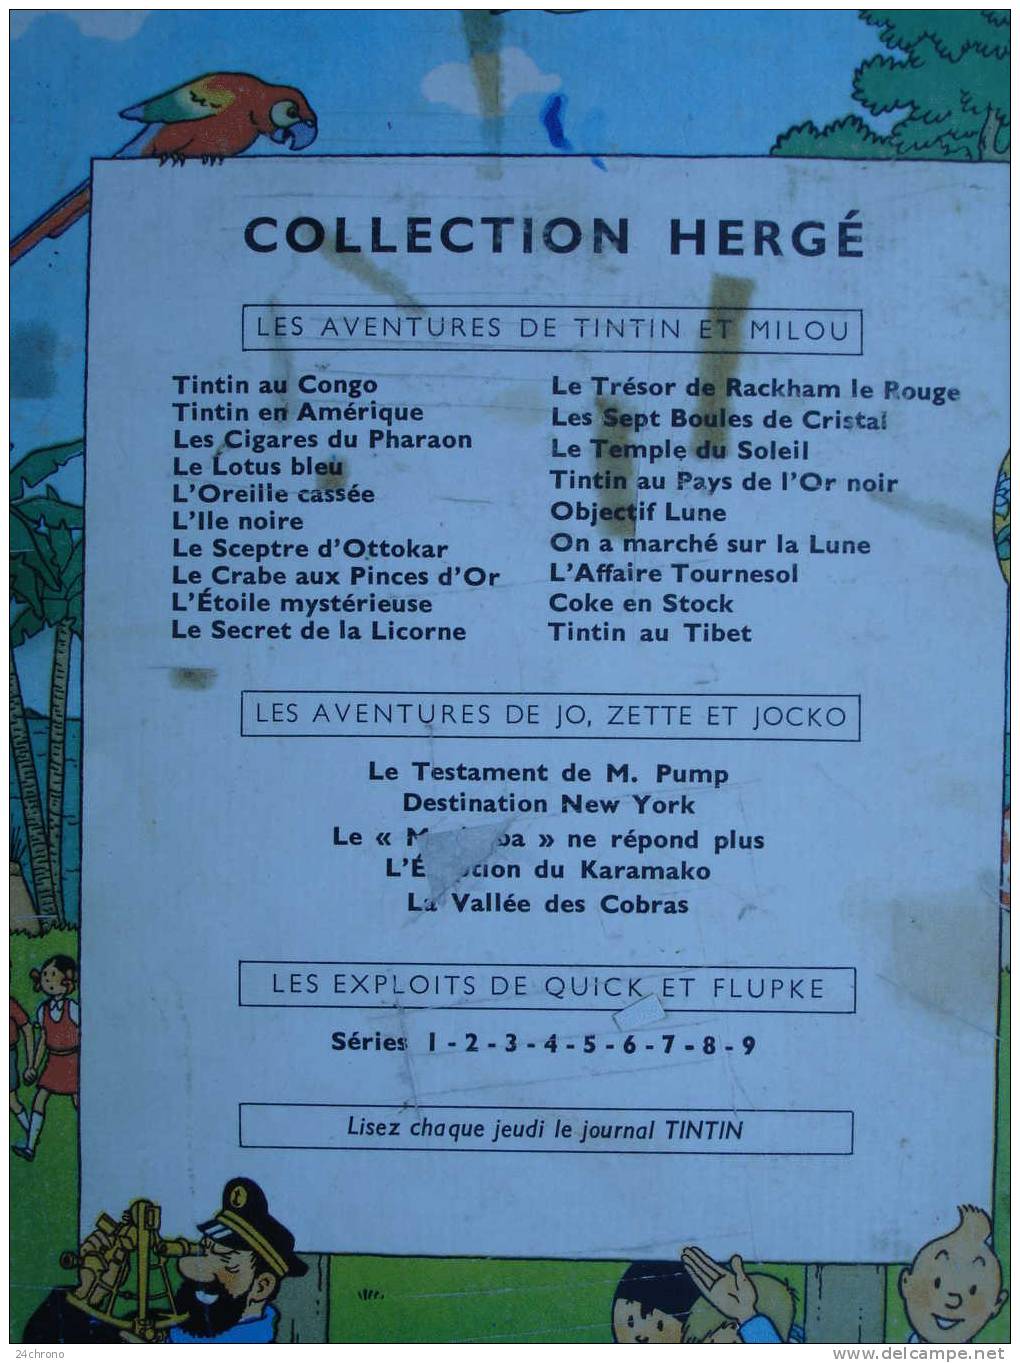 Herge: Les Aventures de Tintin, Imprime en Belgique par les Etablissements Casterman, Les Cigares du Pharaon, B30, 1961